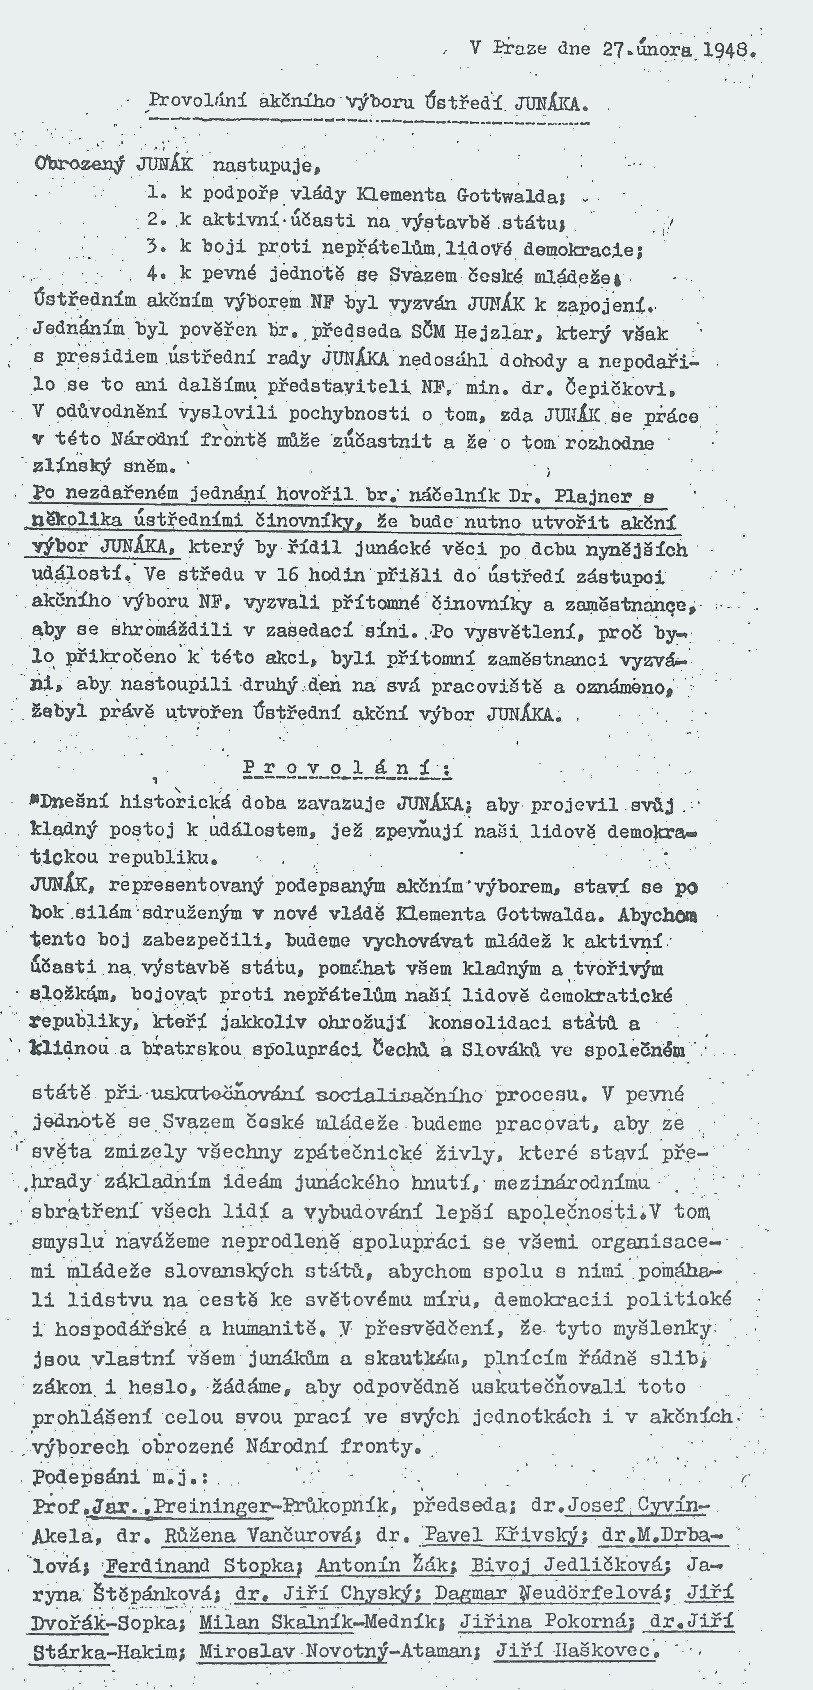 Provolání akčního výboru Junáka (1948)